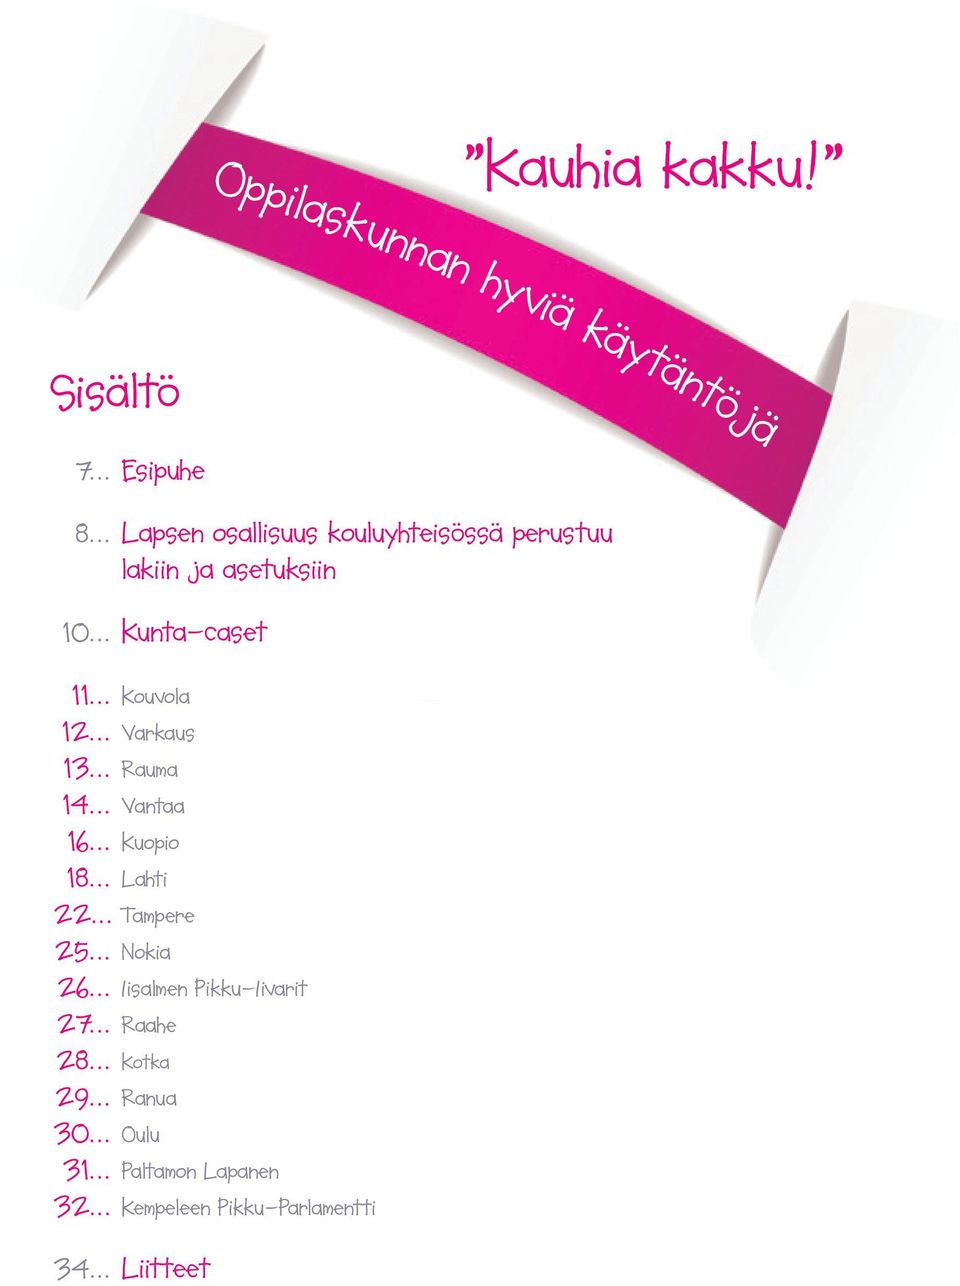 .. Varkaus 13... Rauma 14... Vantaa 16... Kuopio 18... Lahti 22... Tampere 25... Nokia 26.